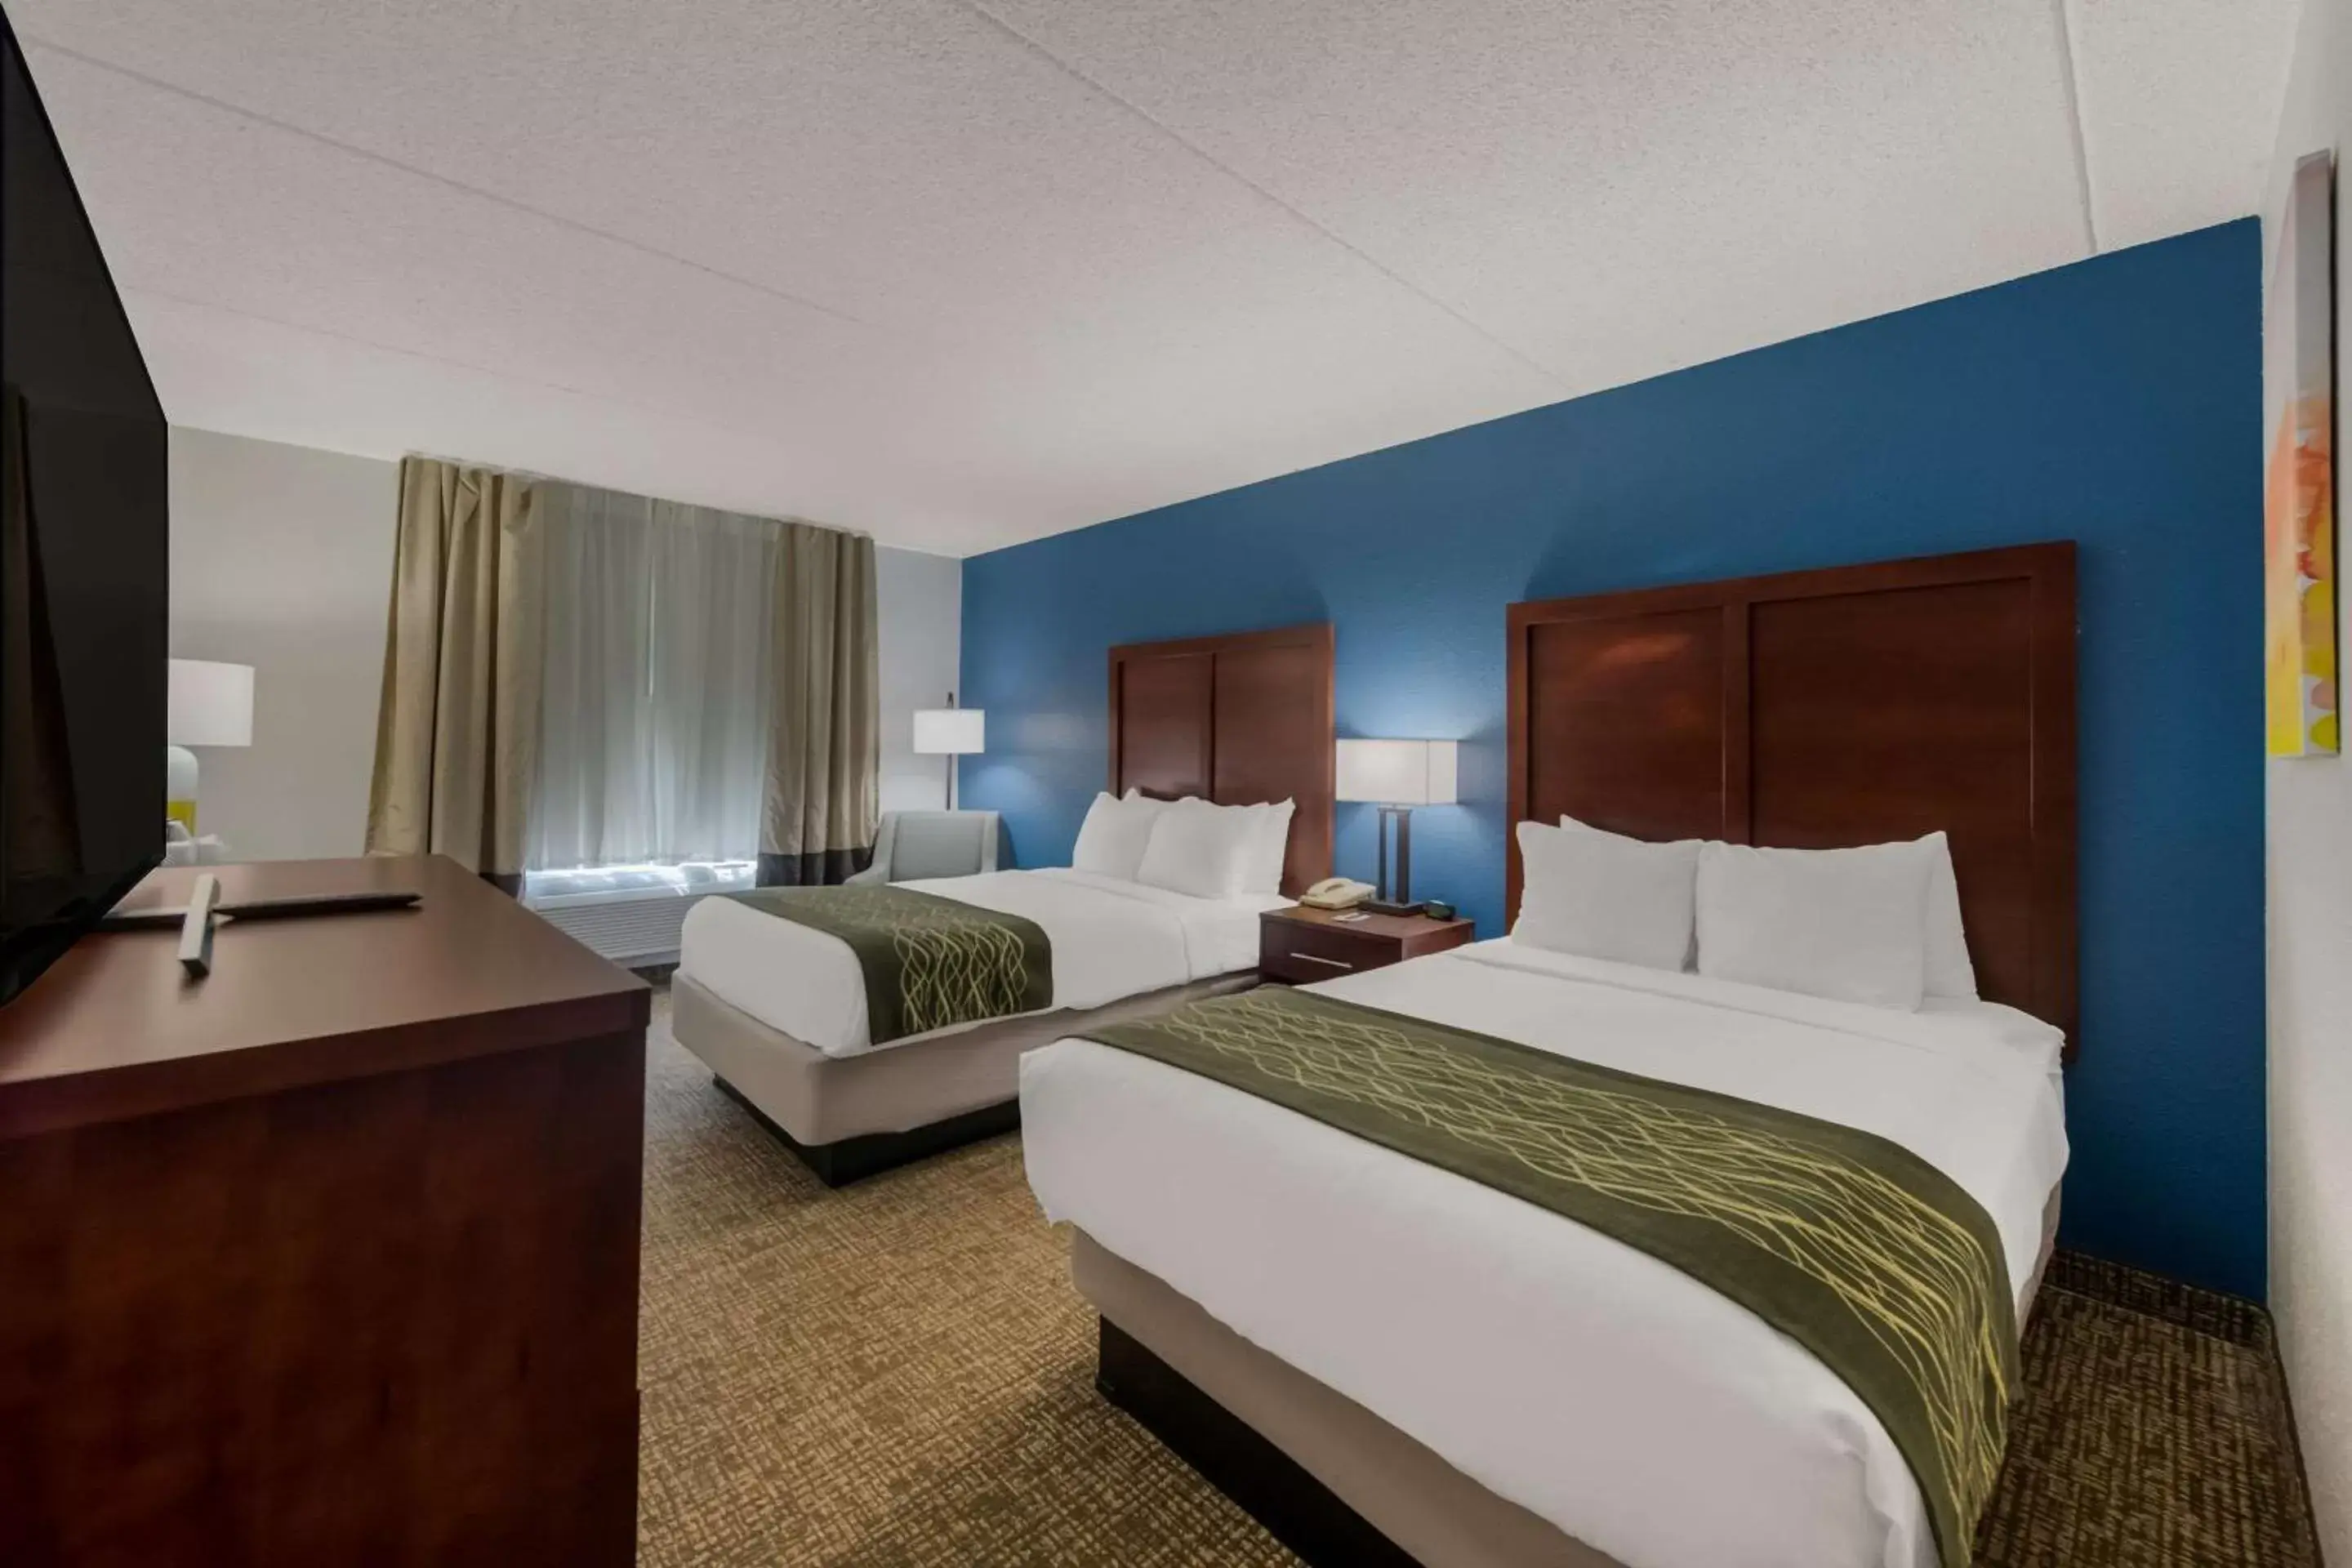 Bedroom, Bed in Comfort Inn Newport News - Hampton I-64